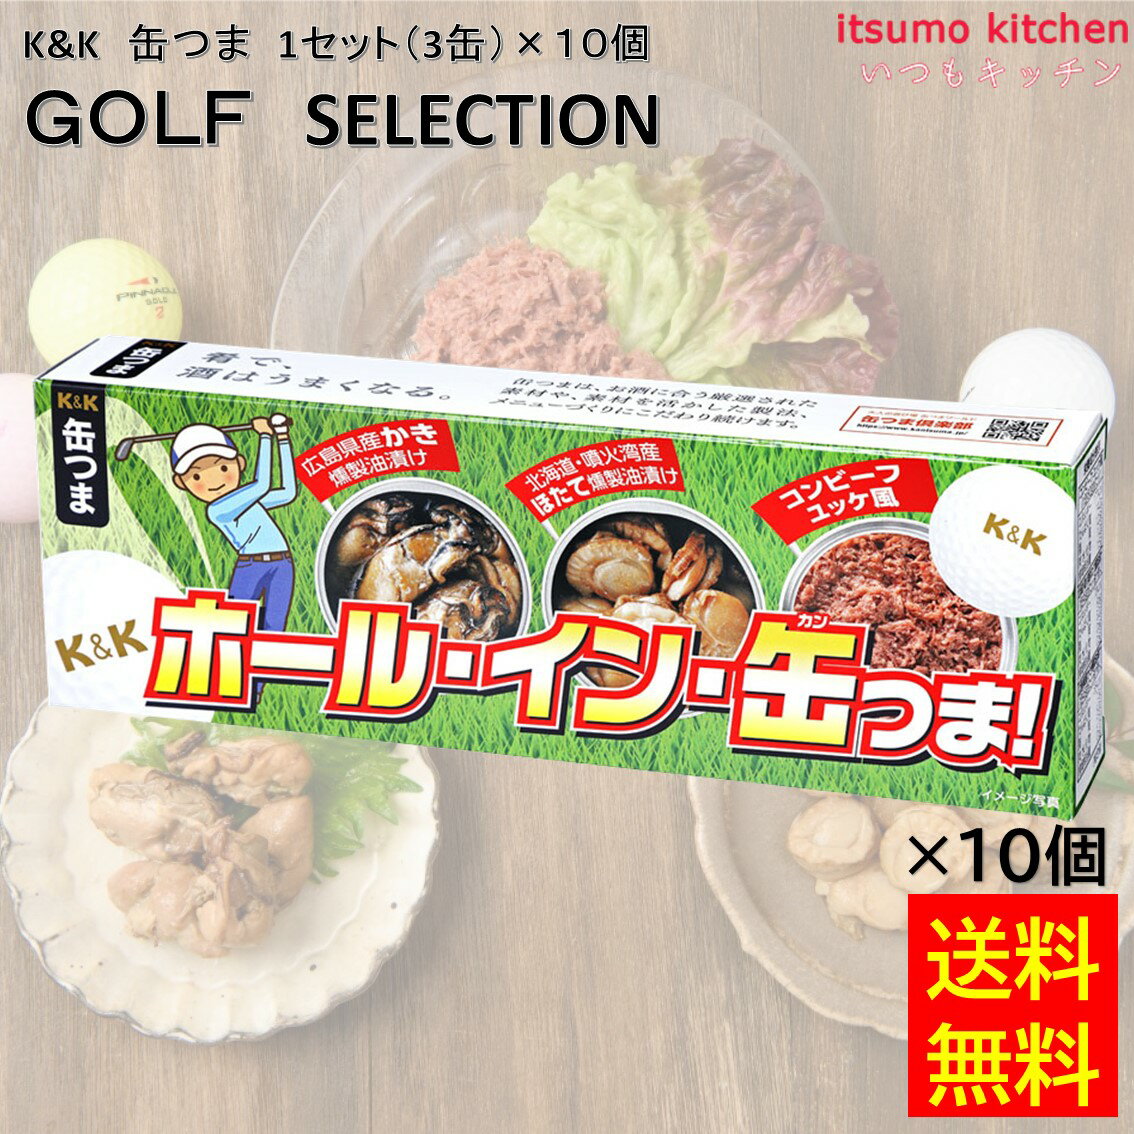 【送料無料】 K&K 缶つま GOLF SELECTION 1セット(3缶)×10個 国分グループ本社 ビール 缶詰 ゴルフ